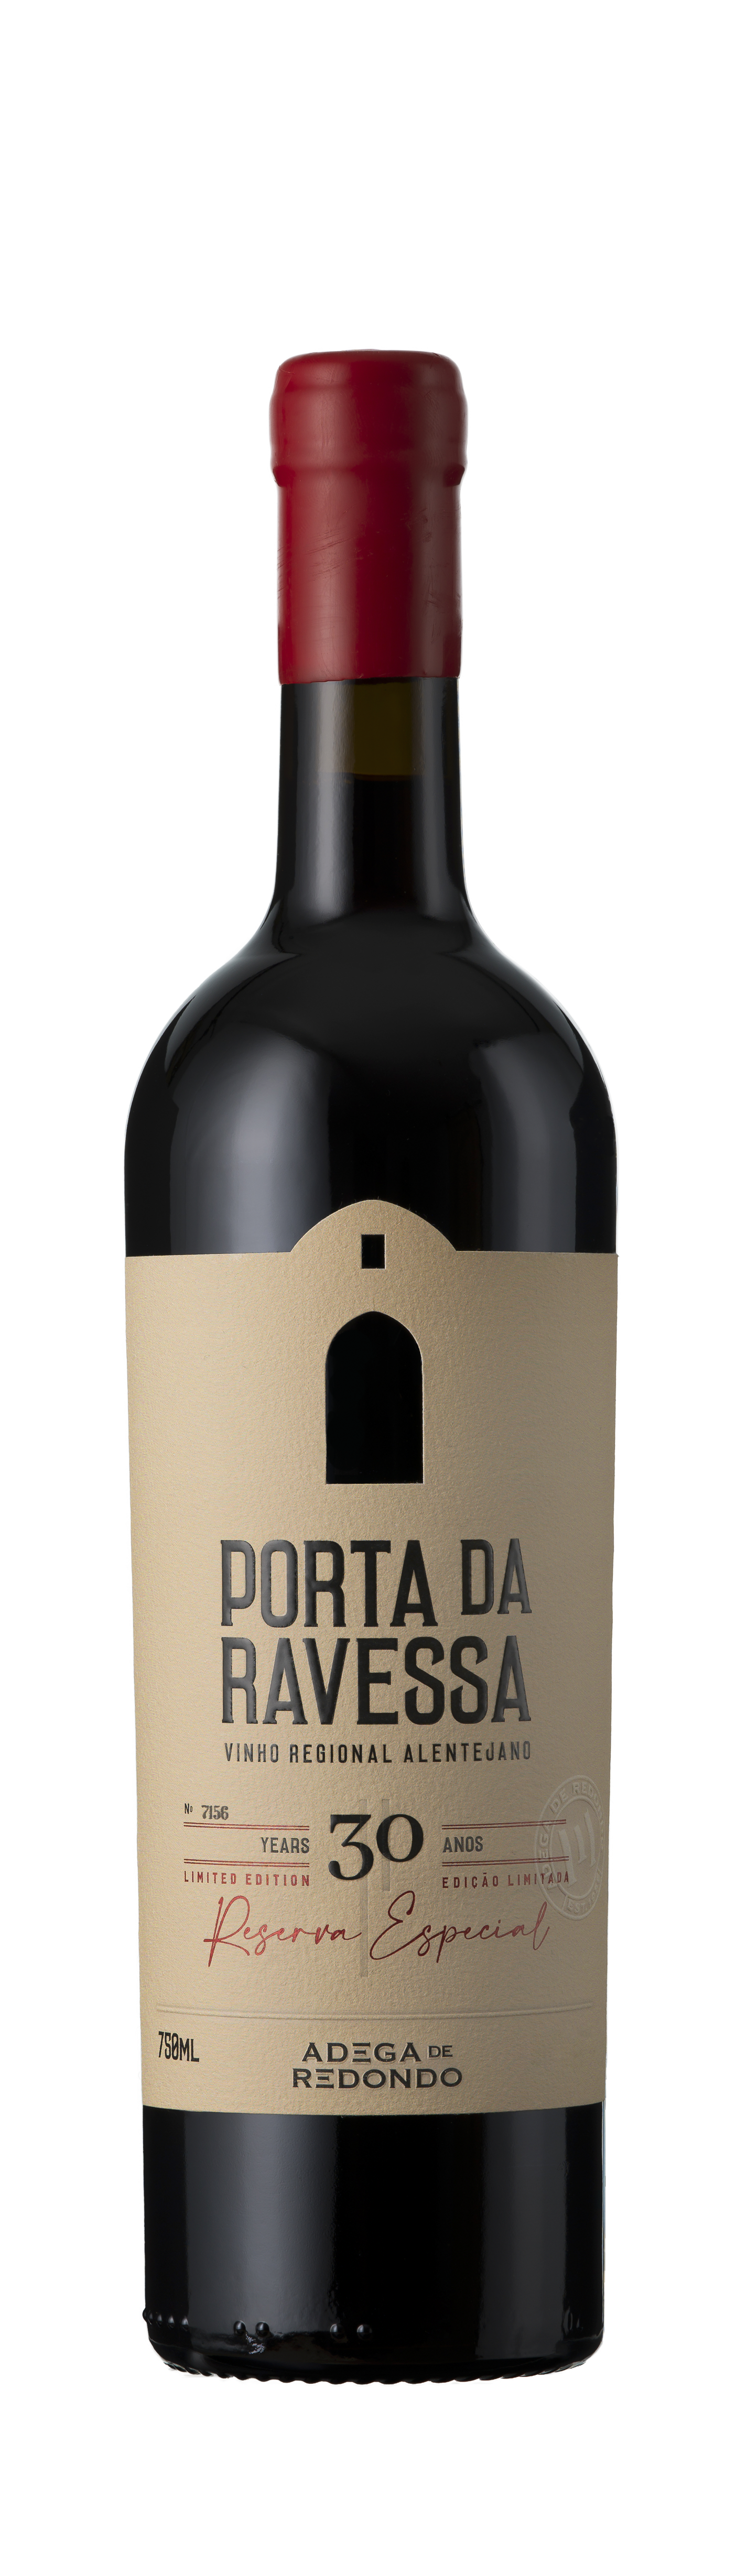 Bottle shot - Adega de Redondo, Porta da Ravessa Reserva especial Tinto (30yr), Vinho Regional Alentejano, Portugal